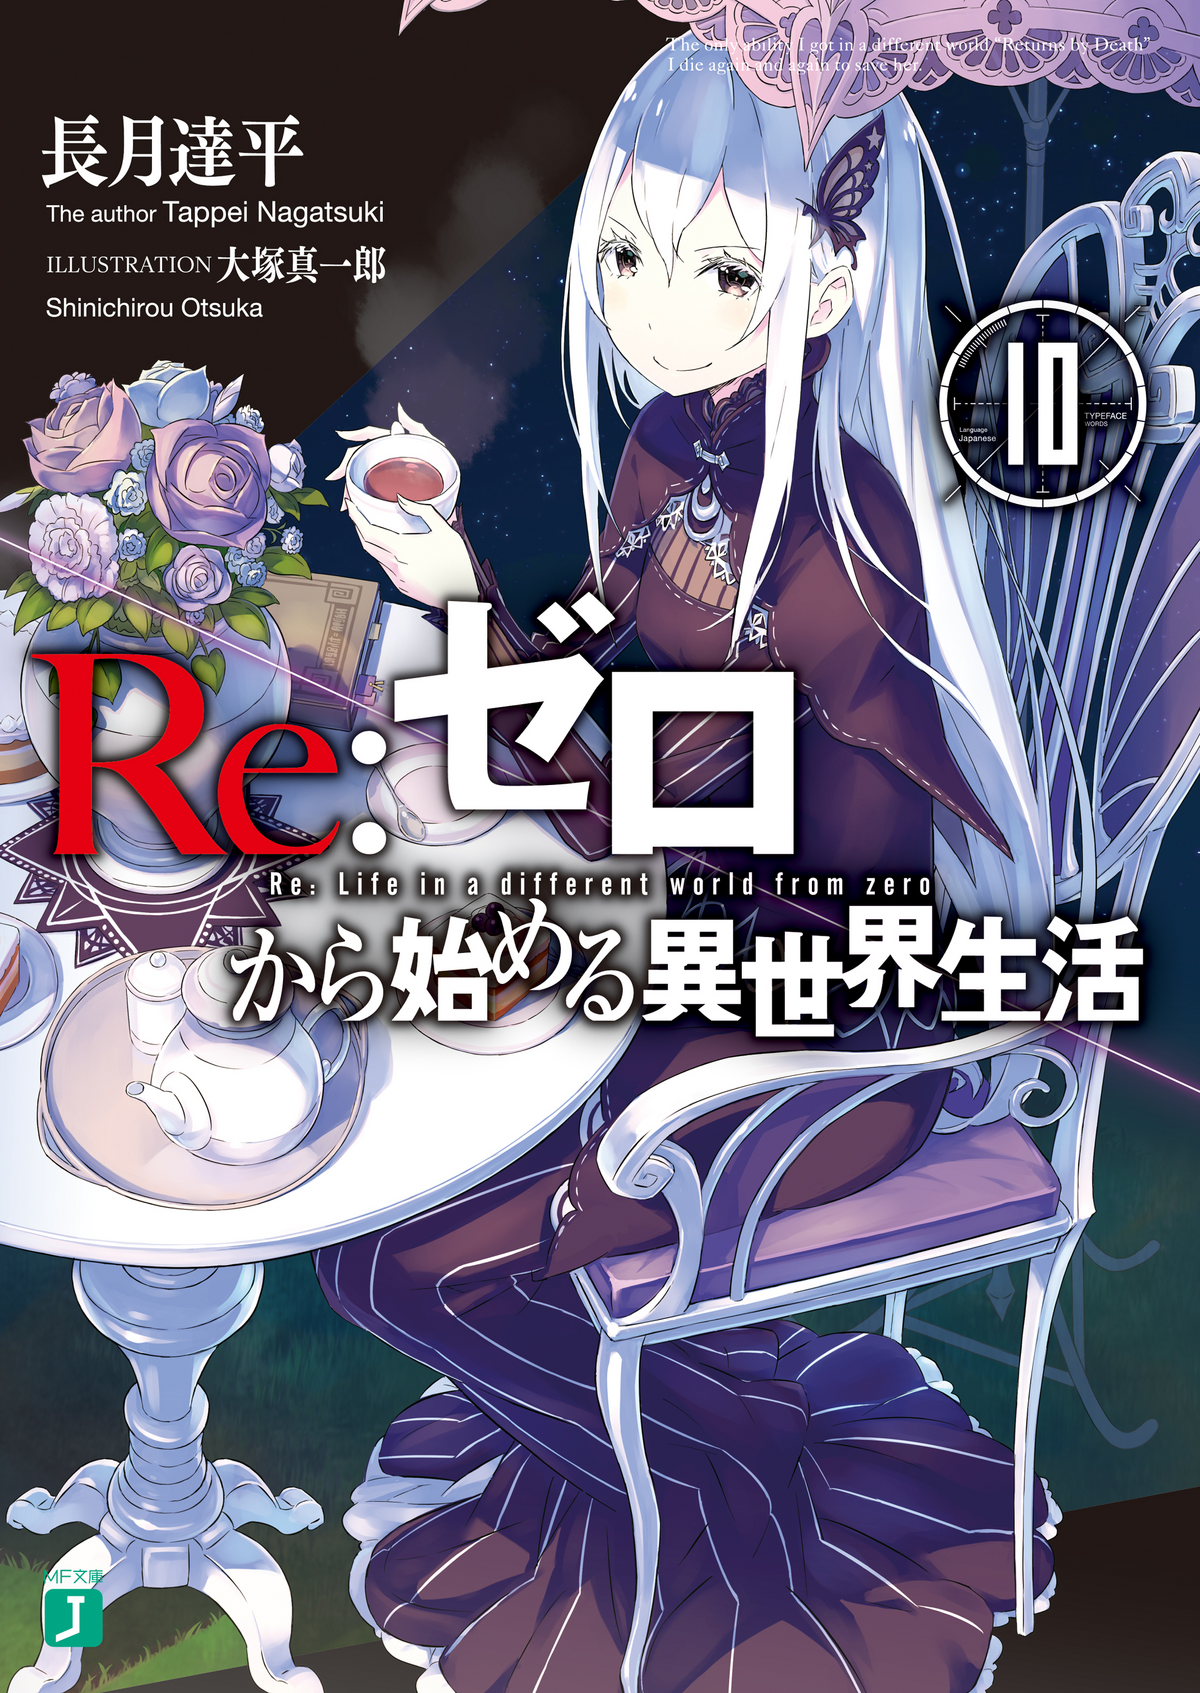 Anime Like Re Zero  10 Best Anime Similar to Re Zero